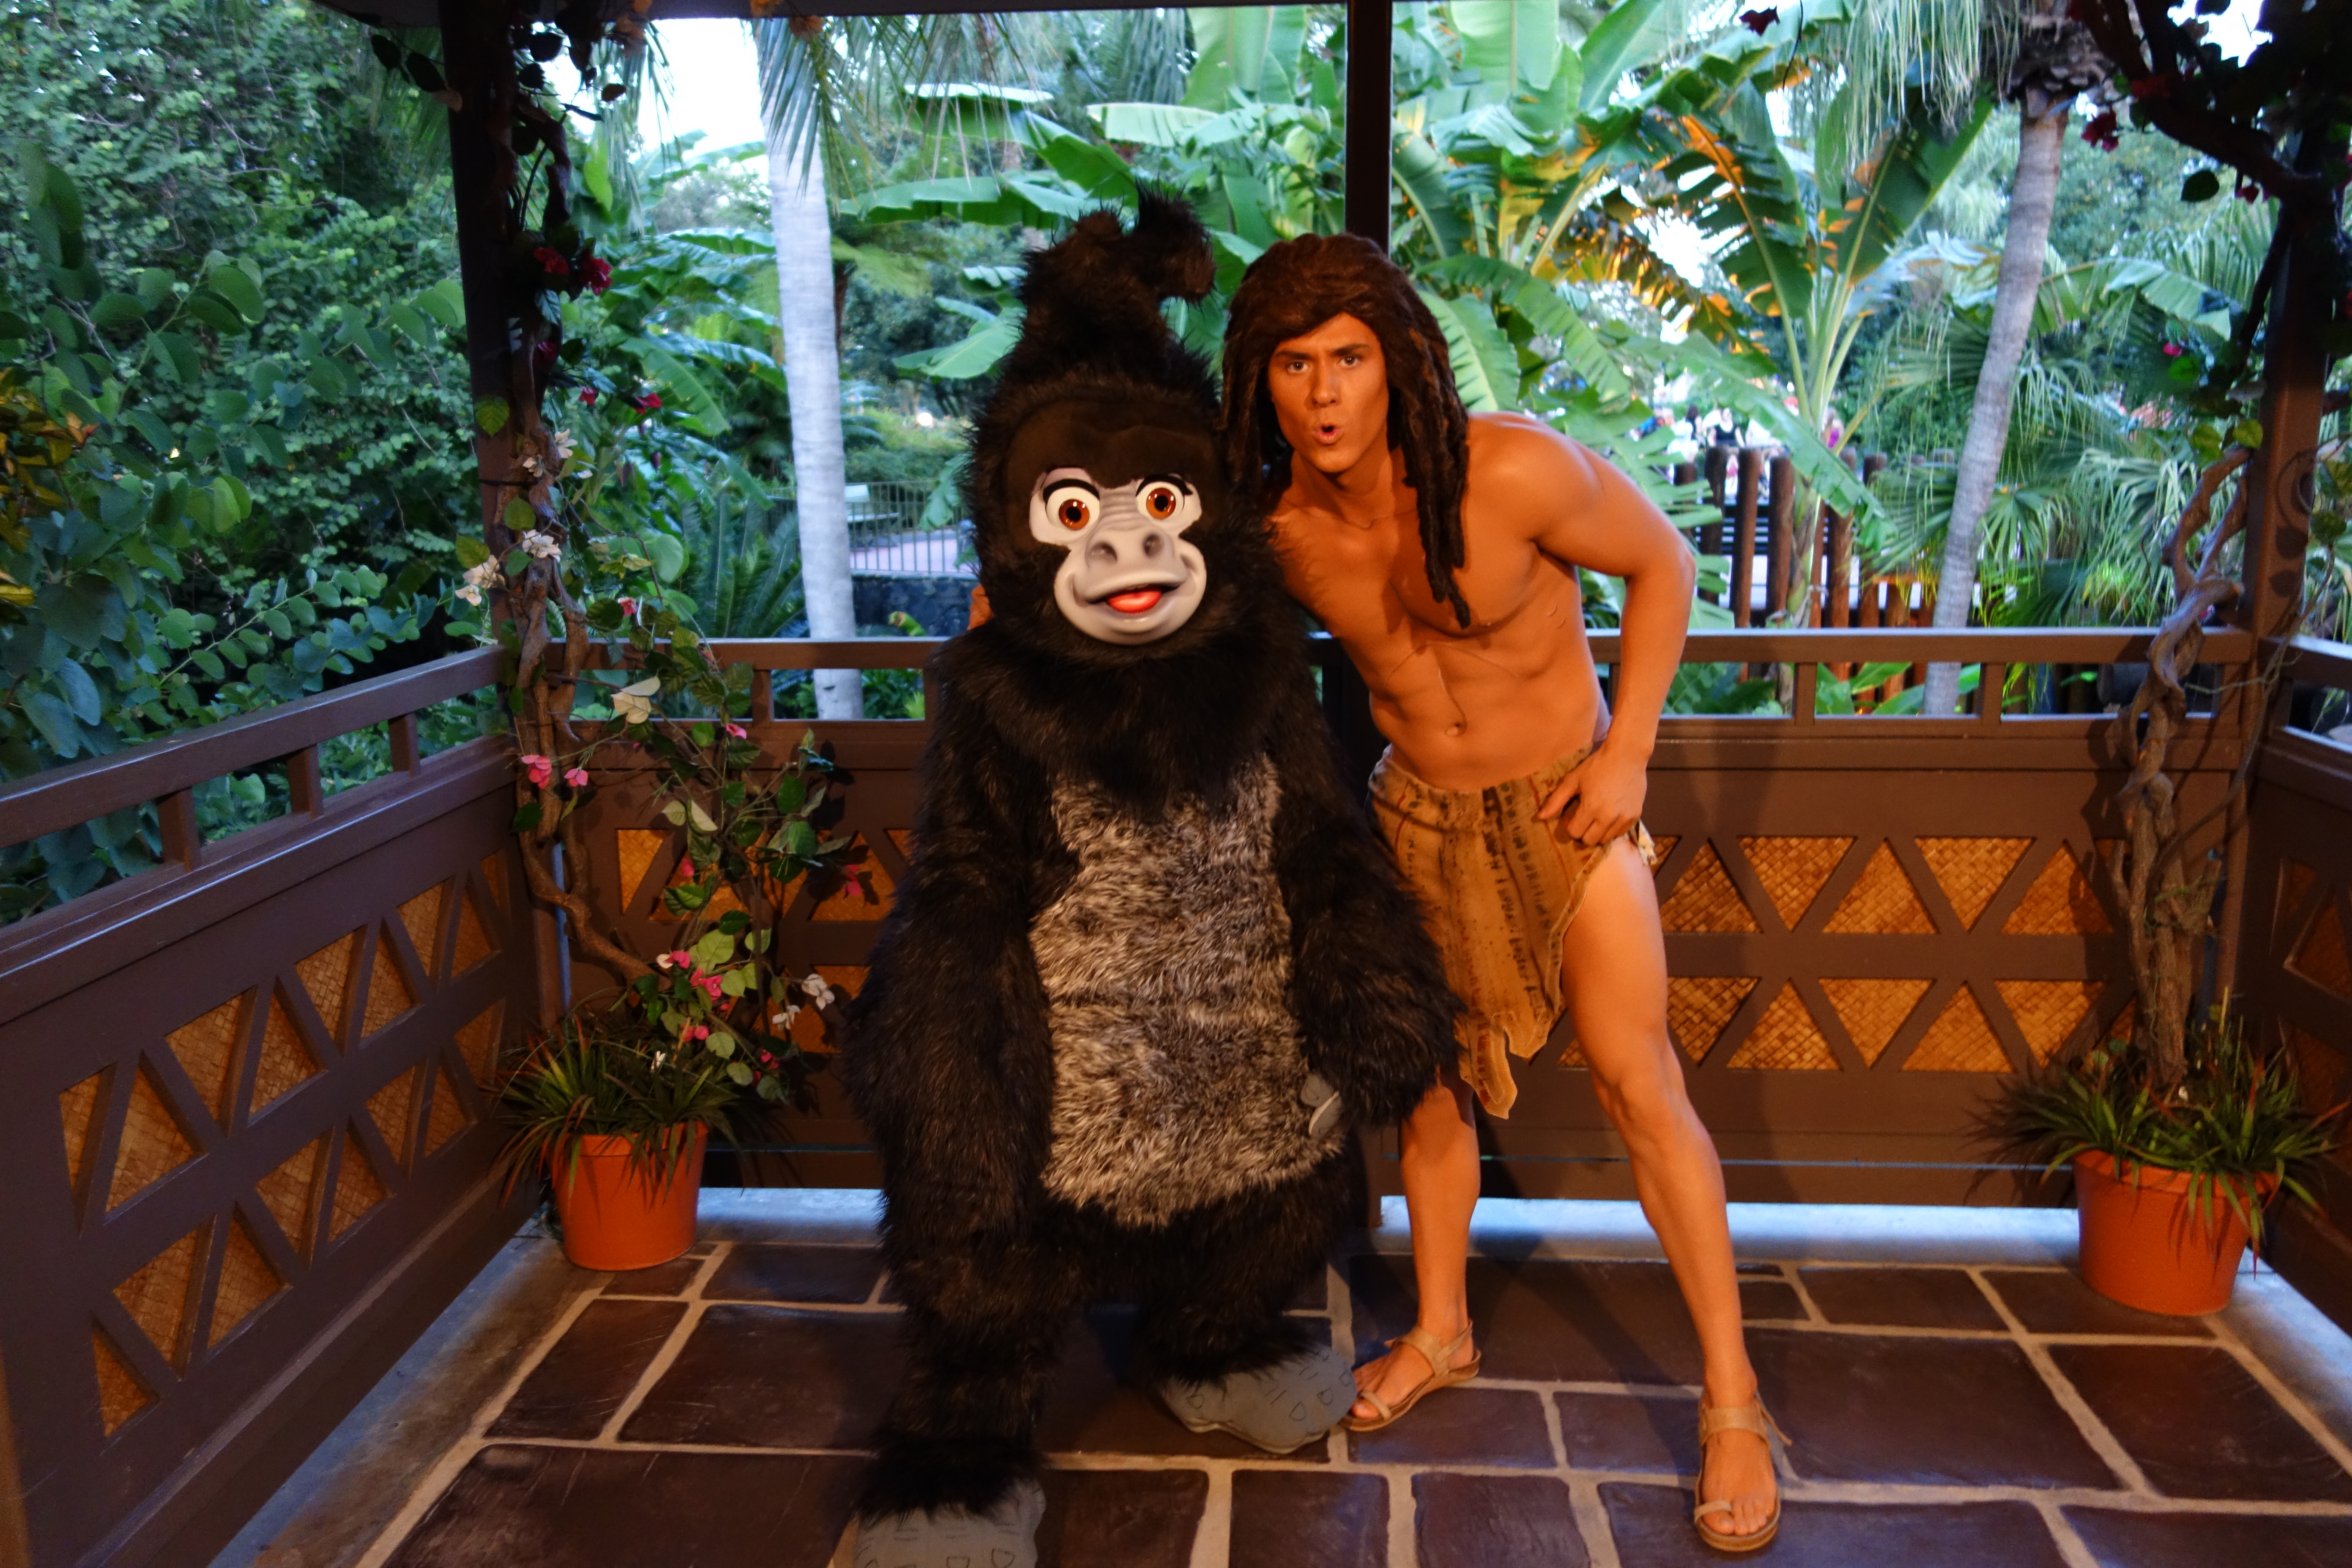 Terk with Tarzan at Mickey's Not So Scary Halloween Party 2012